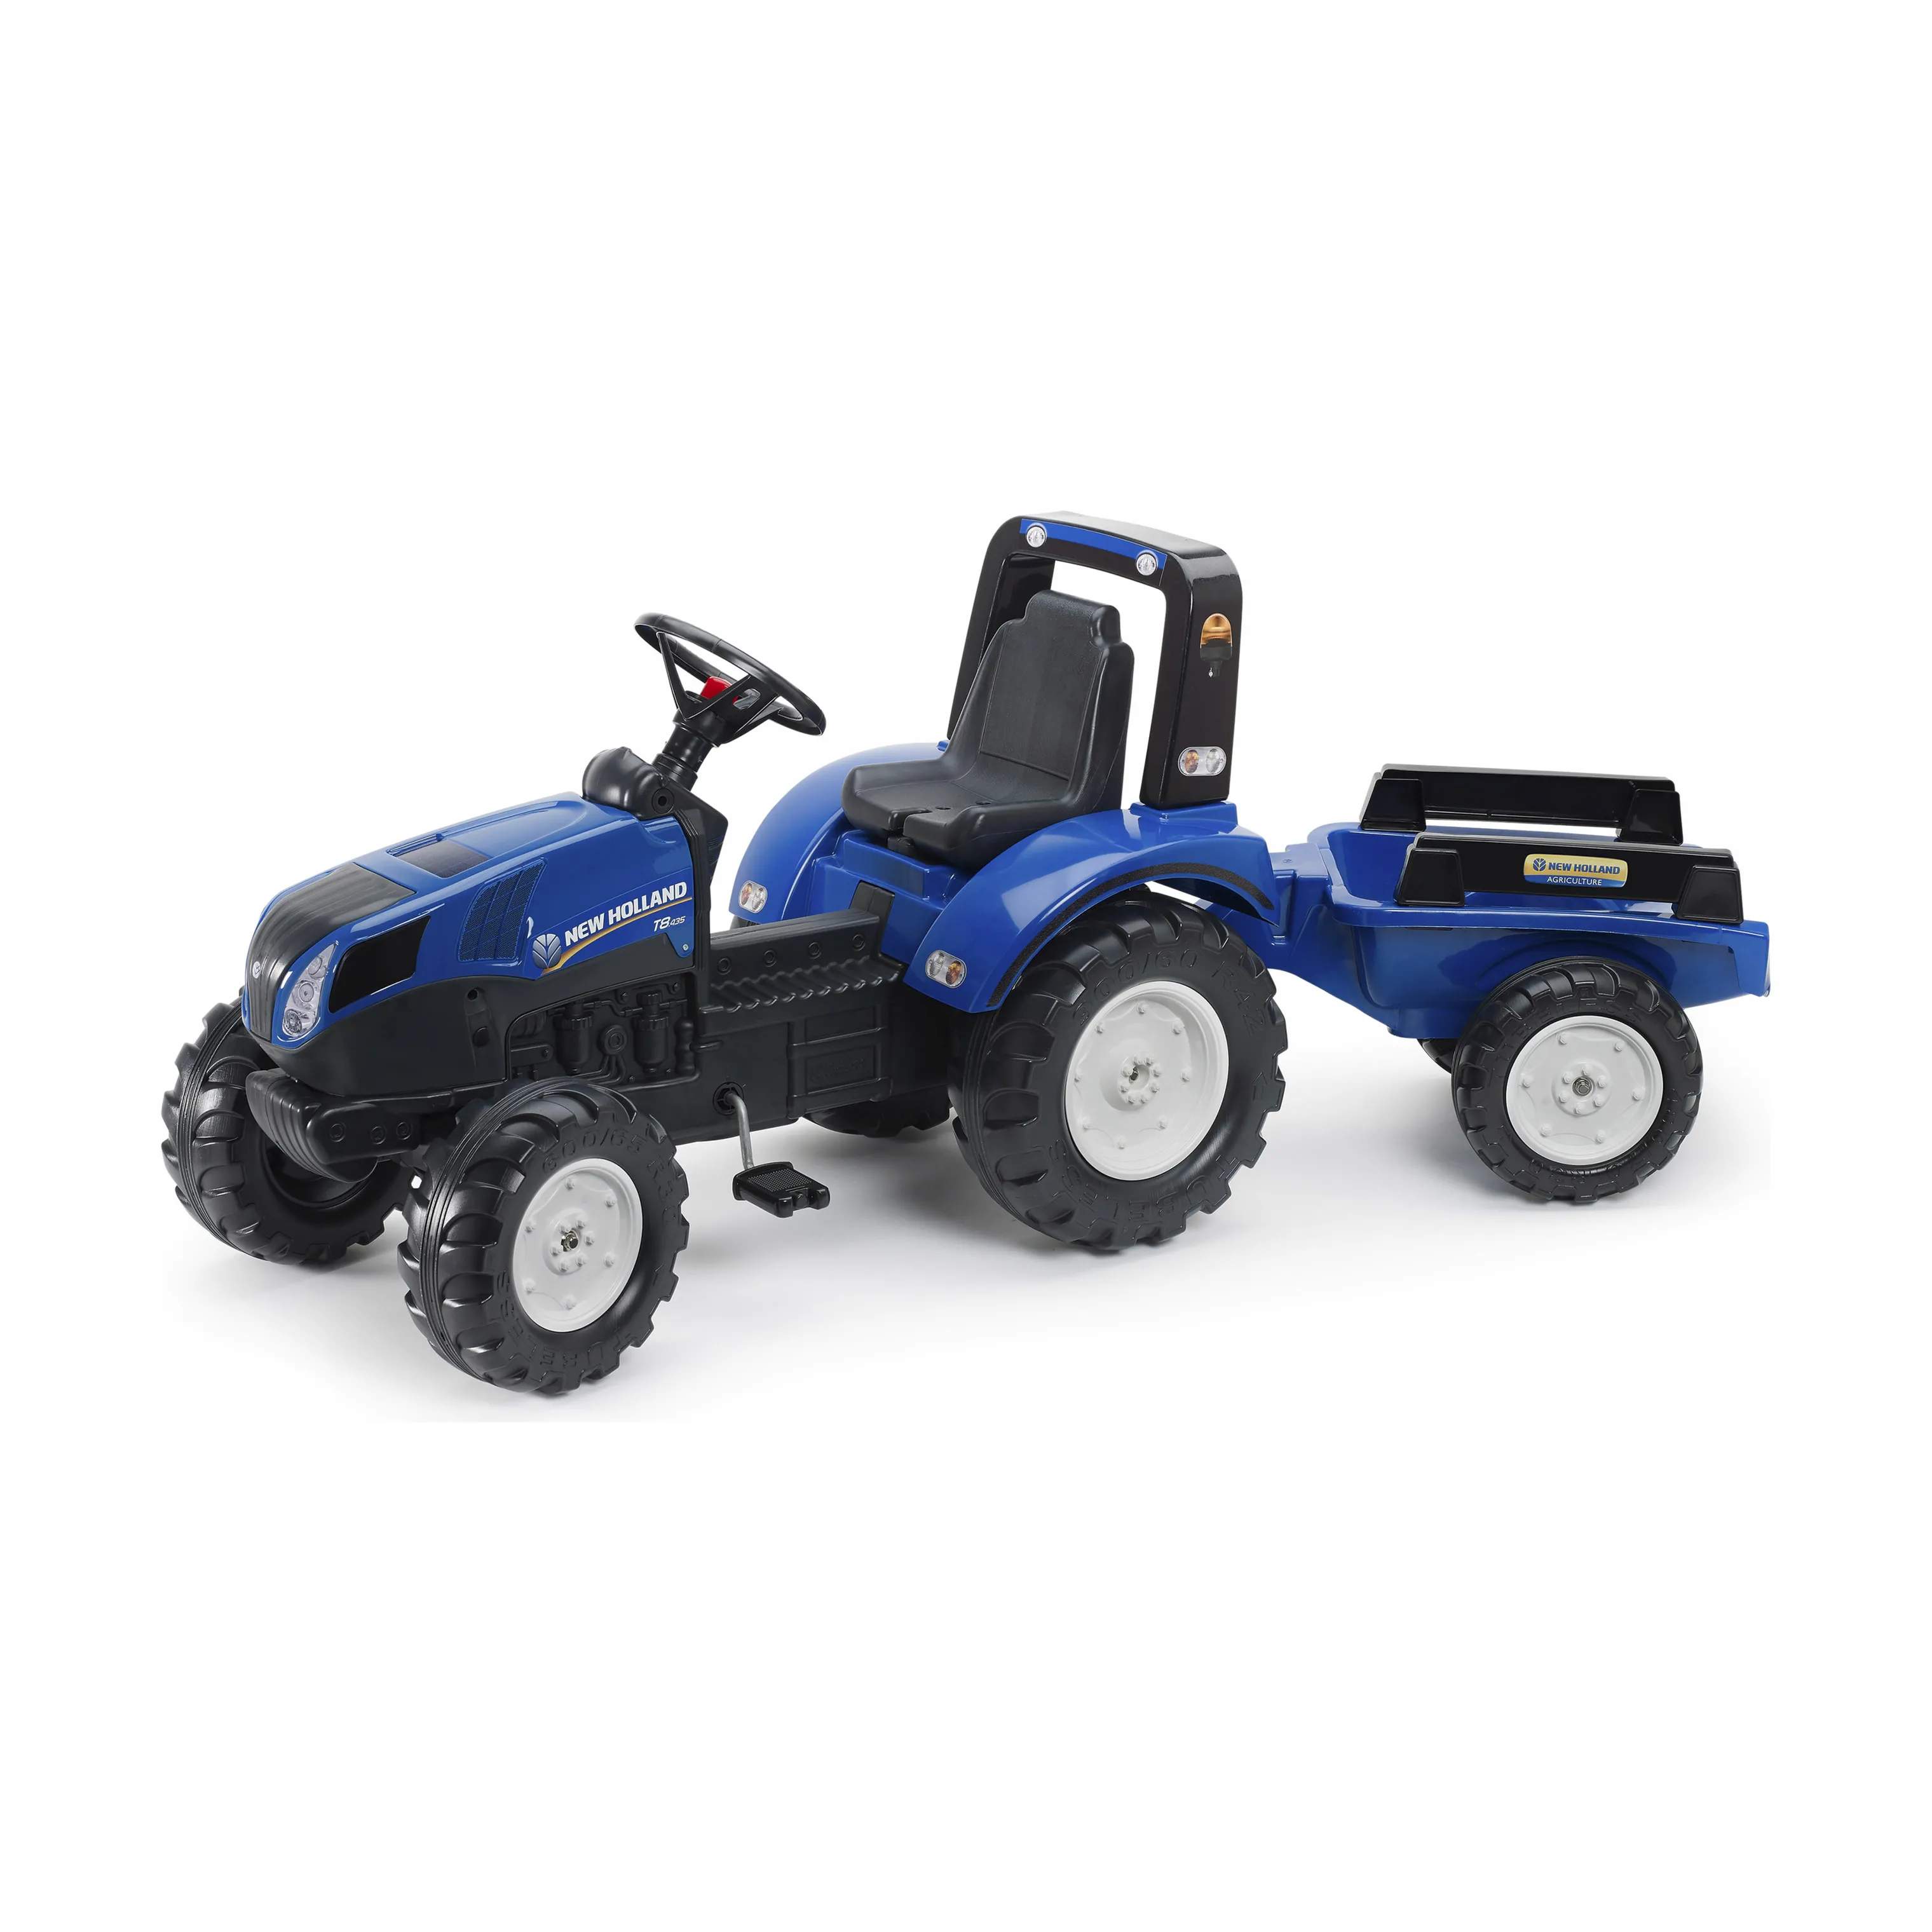 Traktor med vogn - New Holland, blå/sort, large